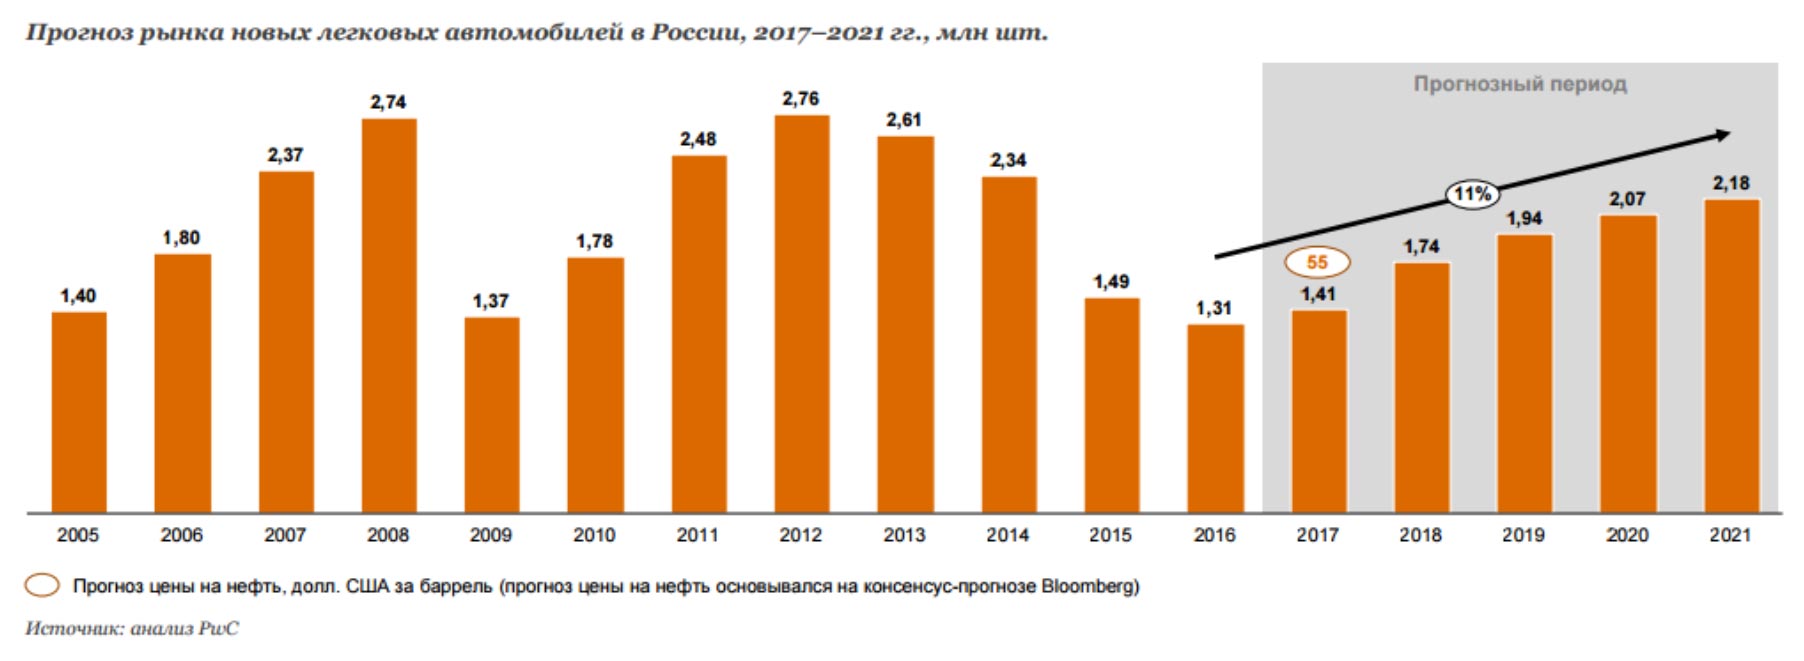 Рынок автомобилей прогноз. Рост количества автомобилей. Рынок легковых автомобилей в России. Количество автомобилей в России. Динамика роста российского автомобильного парка.